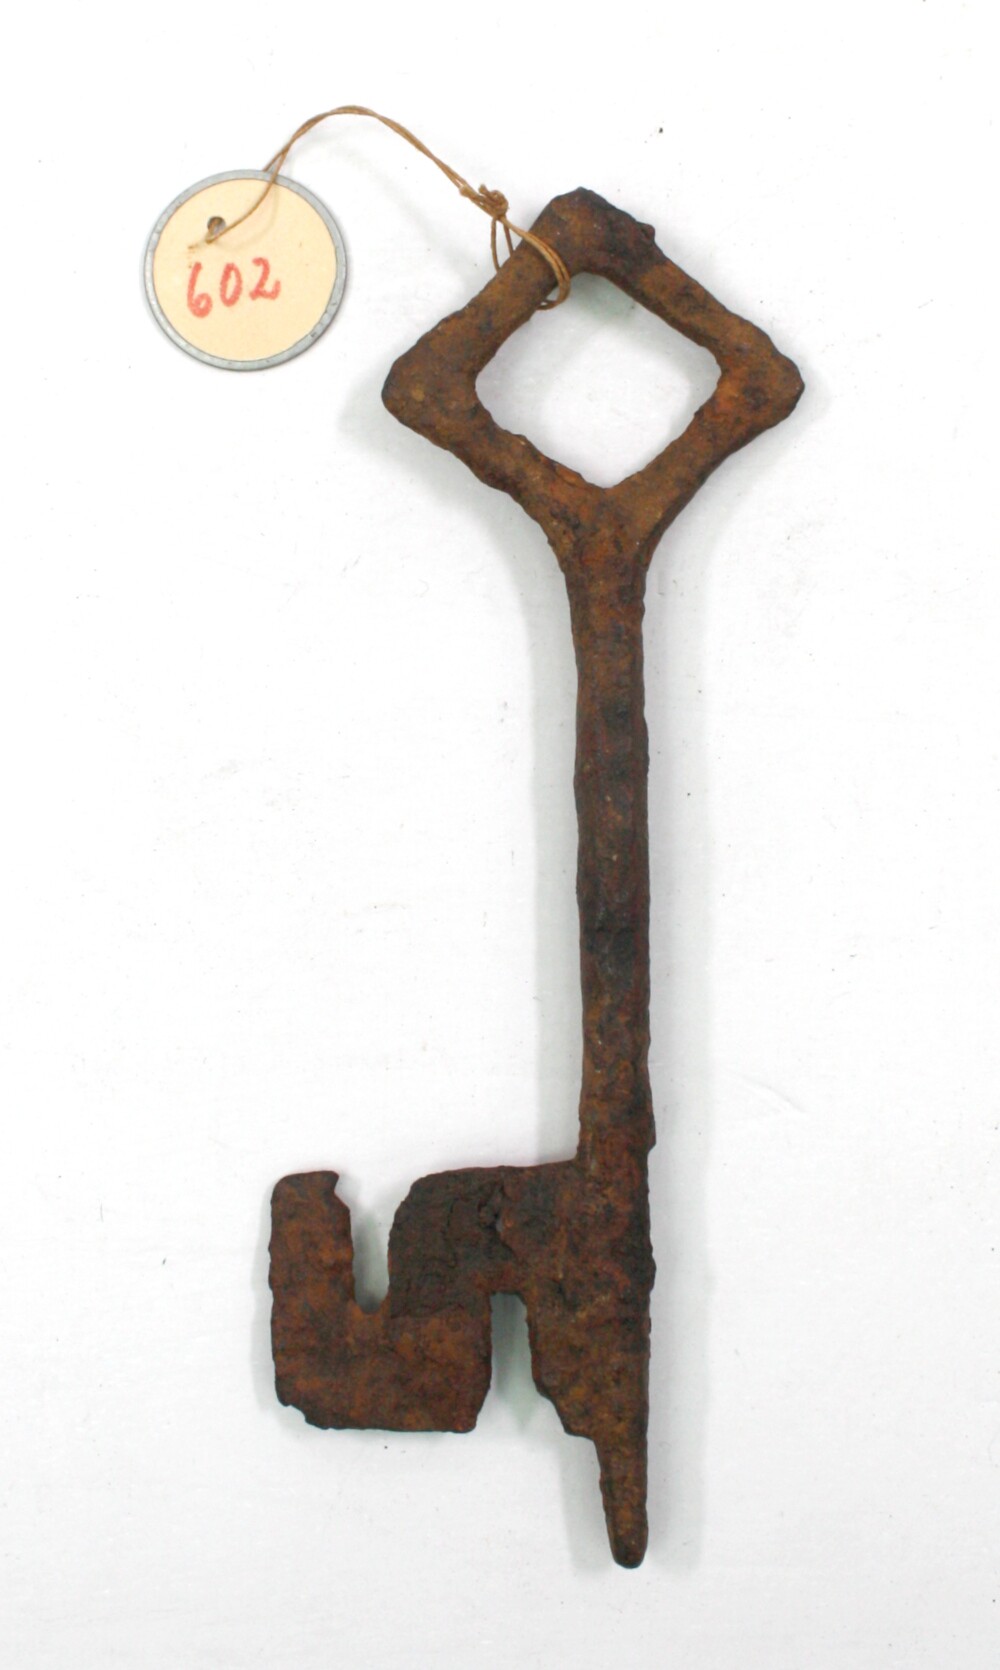 Gotischer Schlüssel (Bodenfund) (Drilandmuseum CC BY-NC-SA)